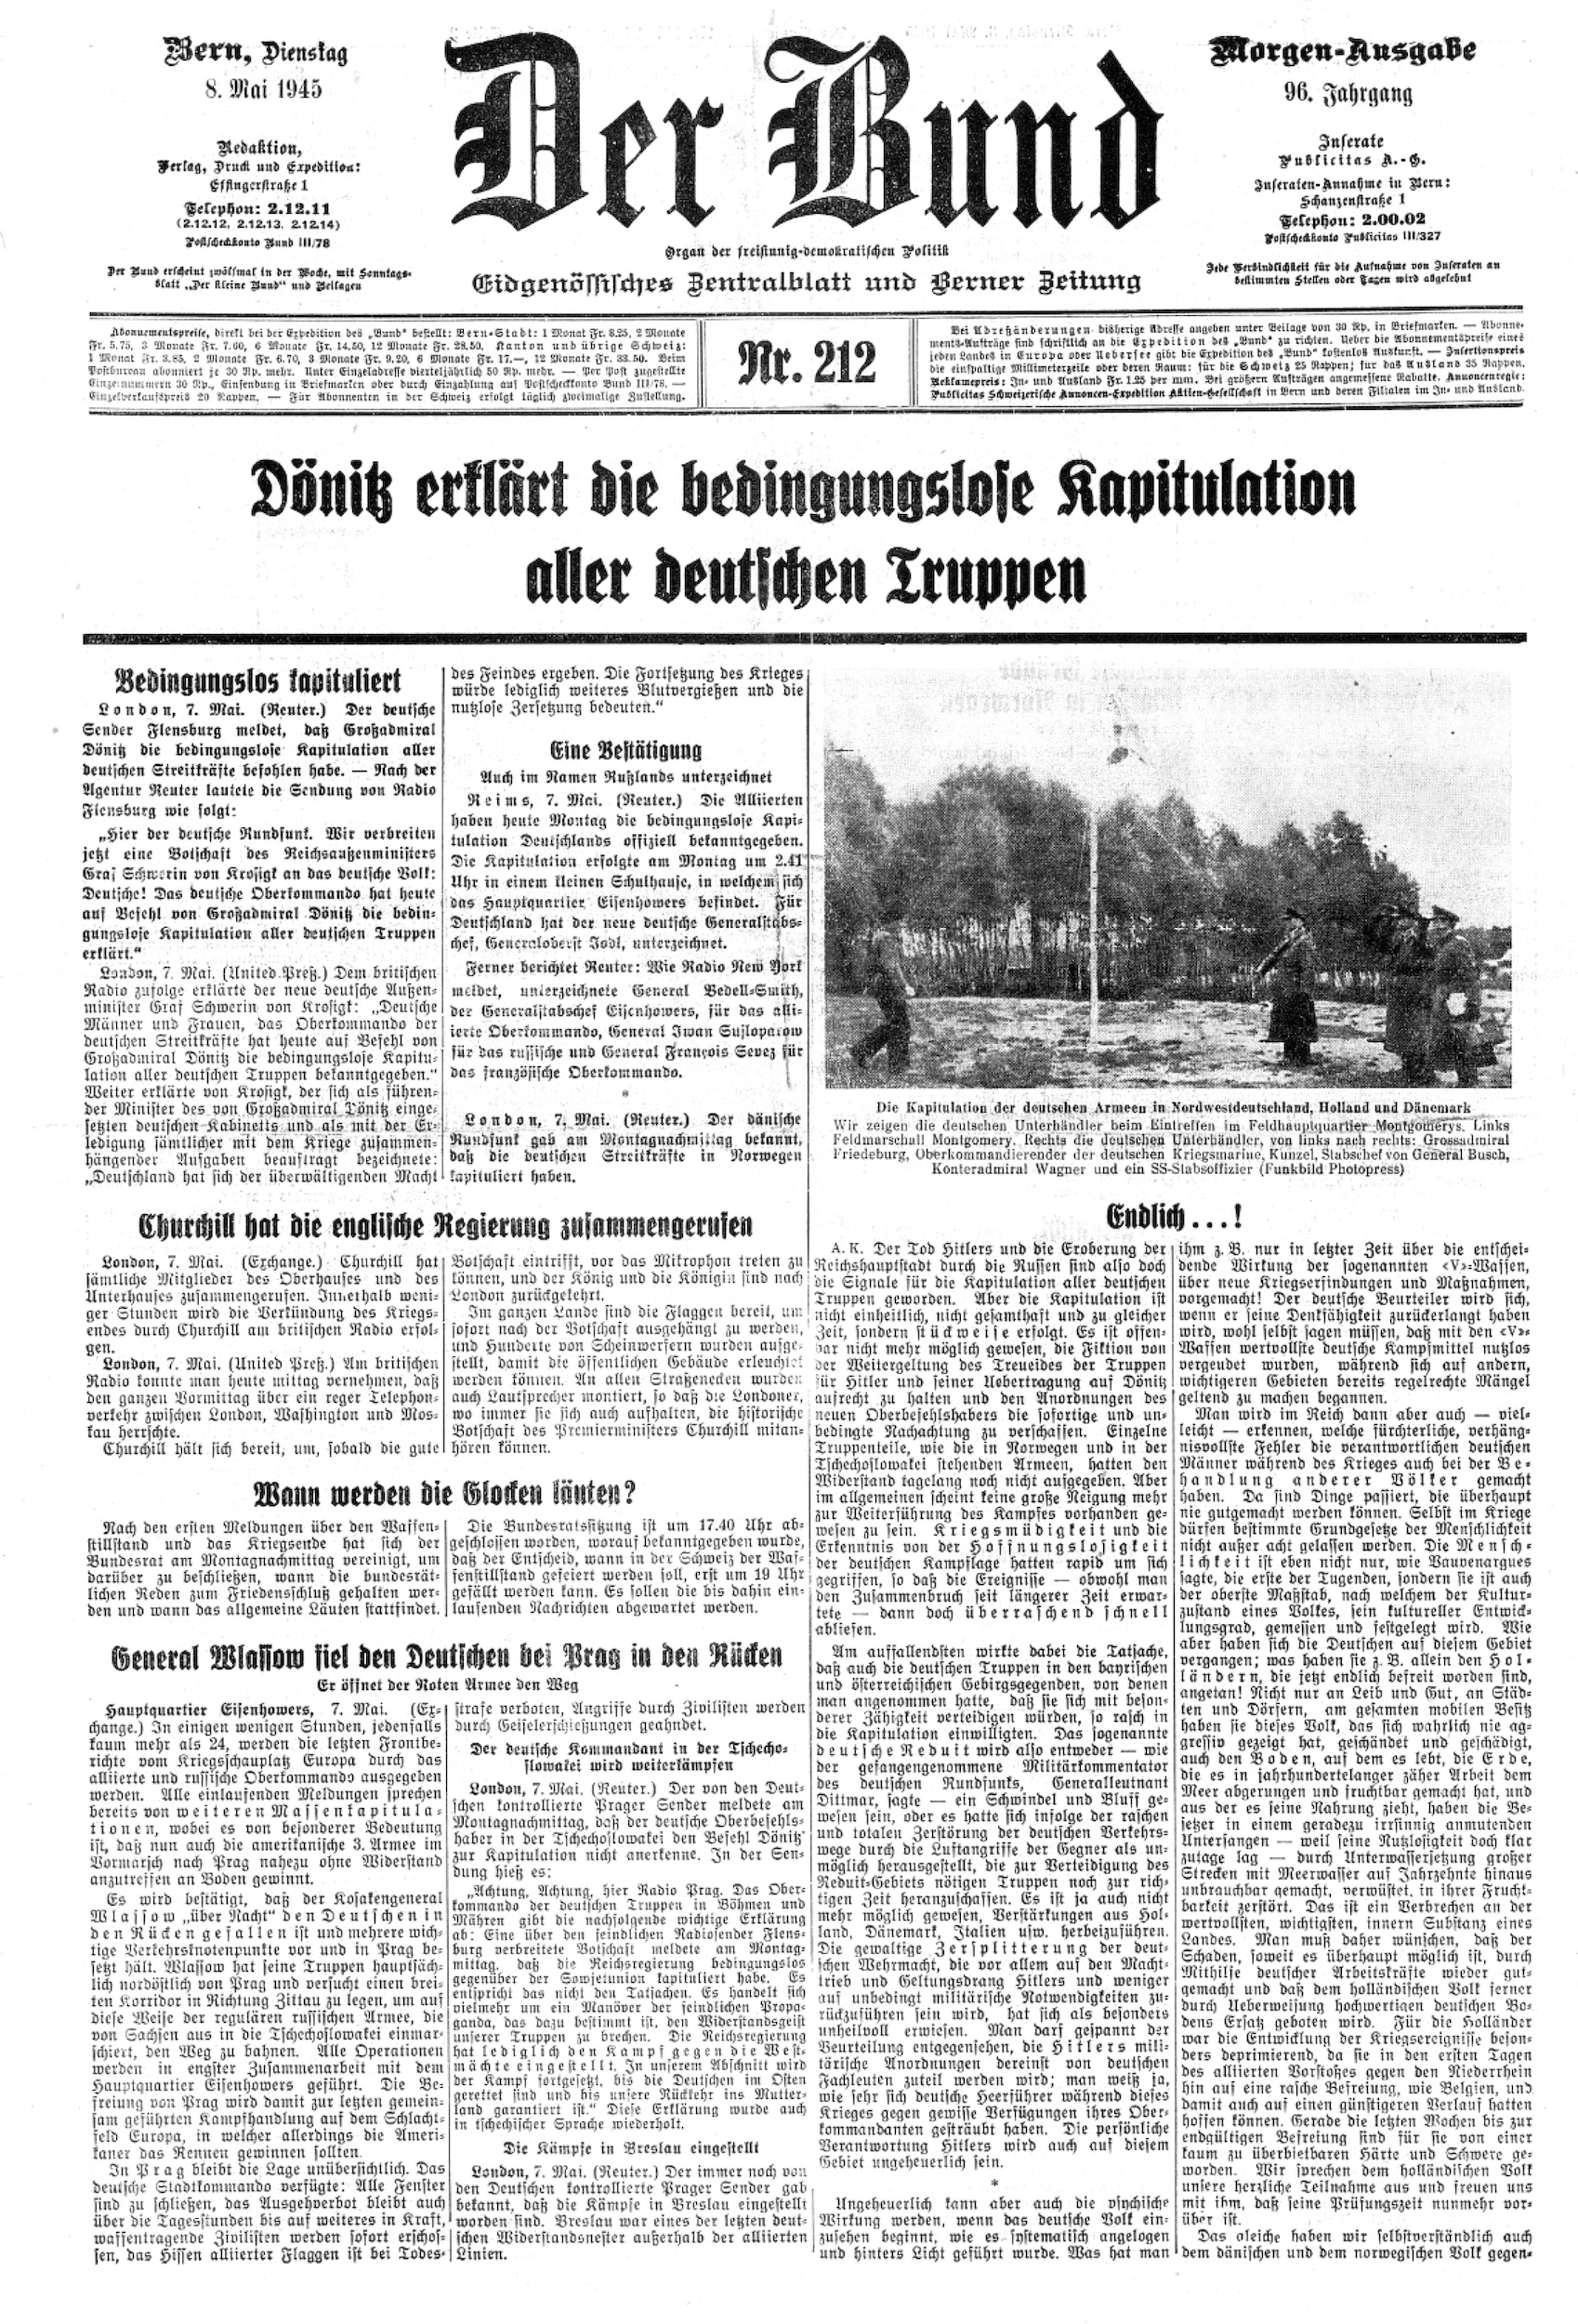 Berner Blatt mit Blick auf die Welt. Die Titelseite des «Bund» zum Ende des Zweiten Weltkriegs. Ausgabe: 8. Mai 1945.